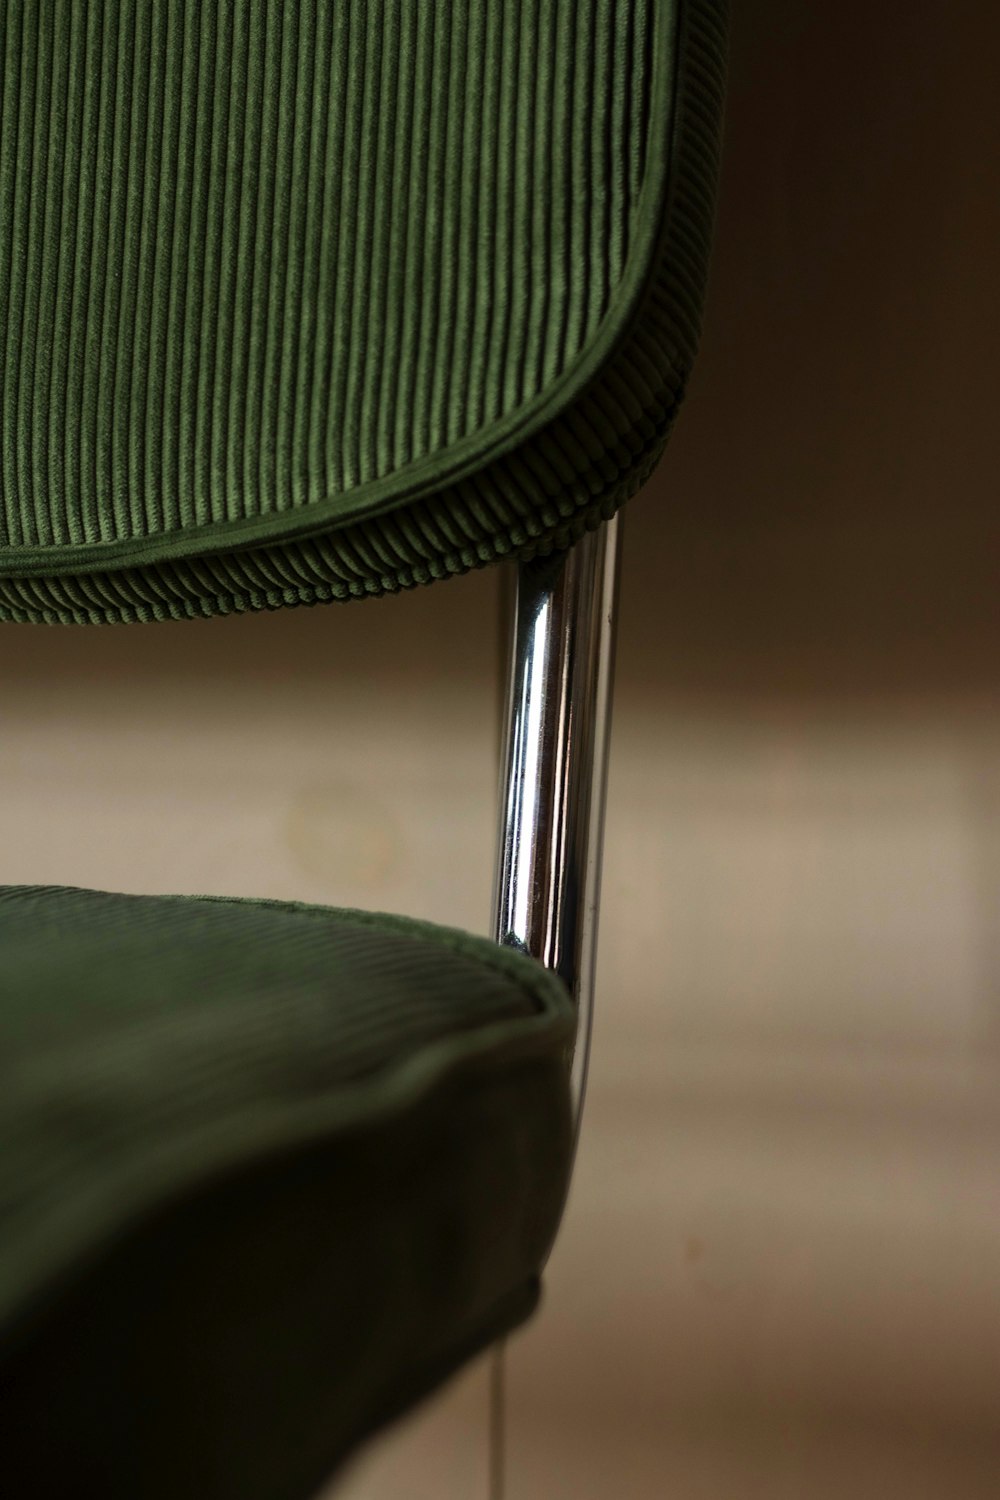 갈색 바닥에 녹색과 검은 색 의자